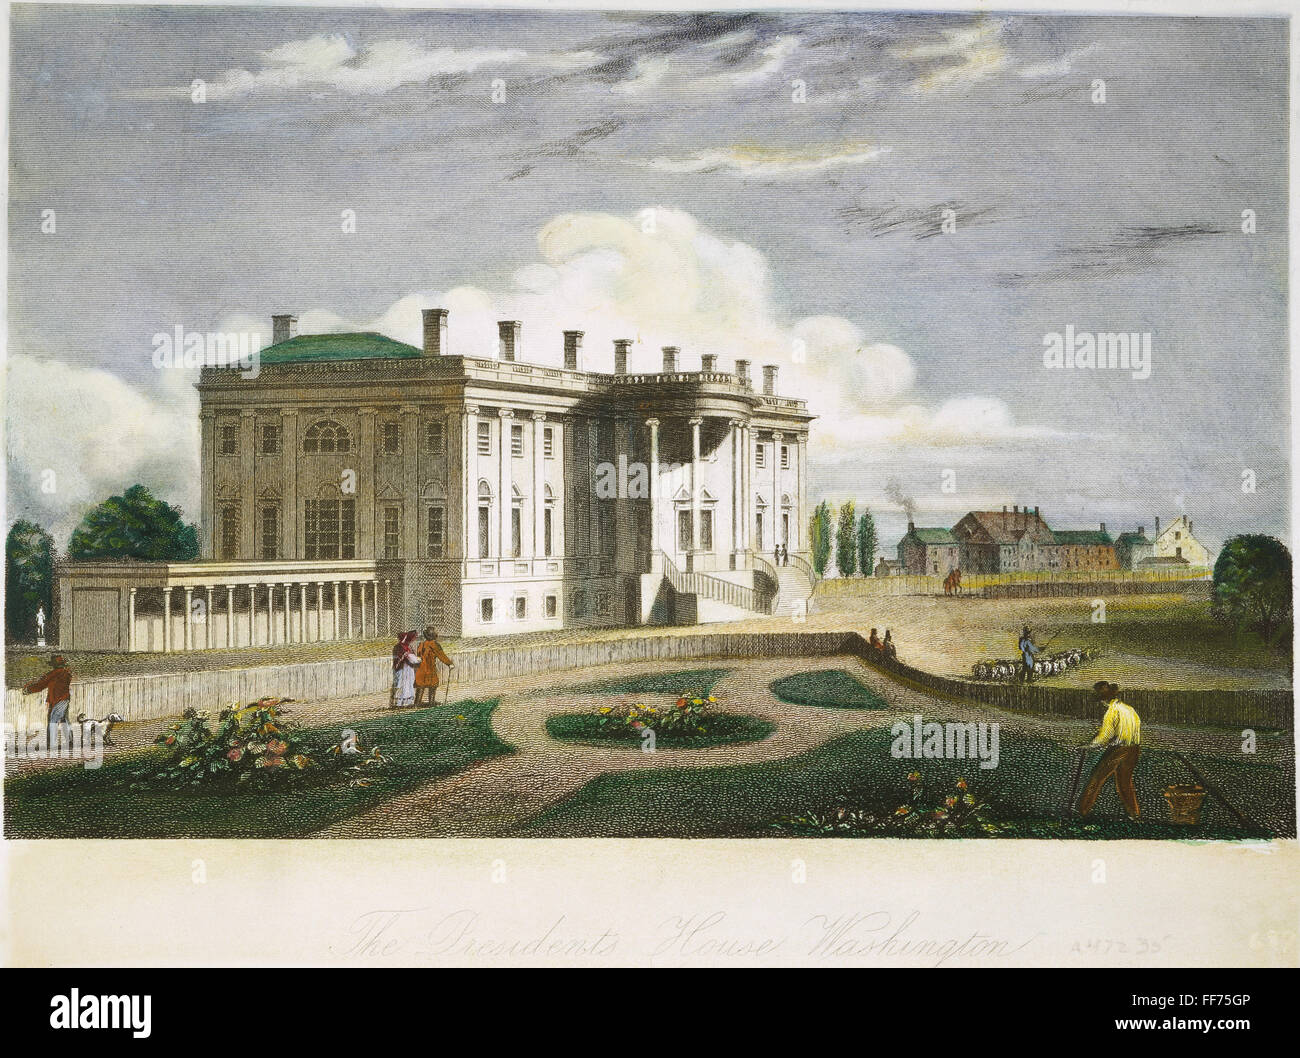 Maison Blanche, D.C., 1830. /Nla President's House à Washington, D.C. gravure sur acier, American, 1830. Banque D'Images